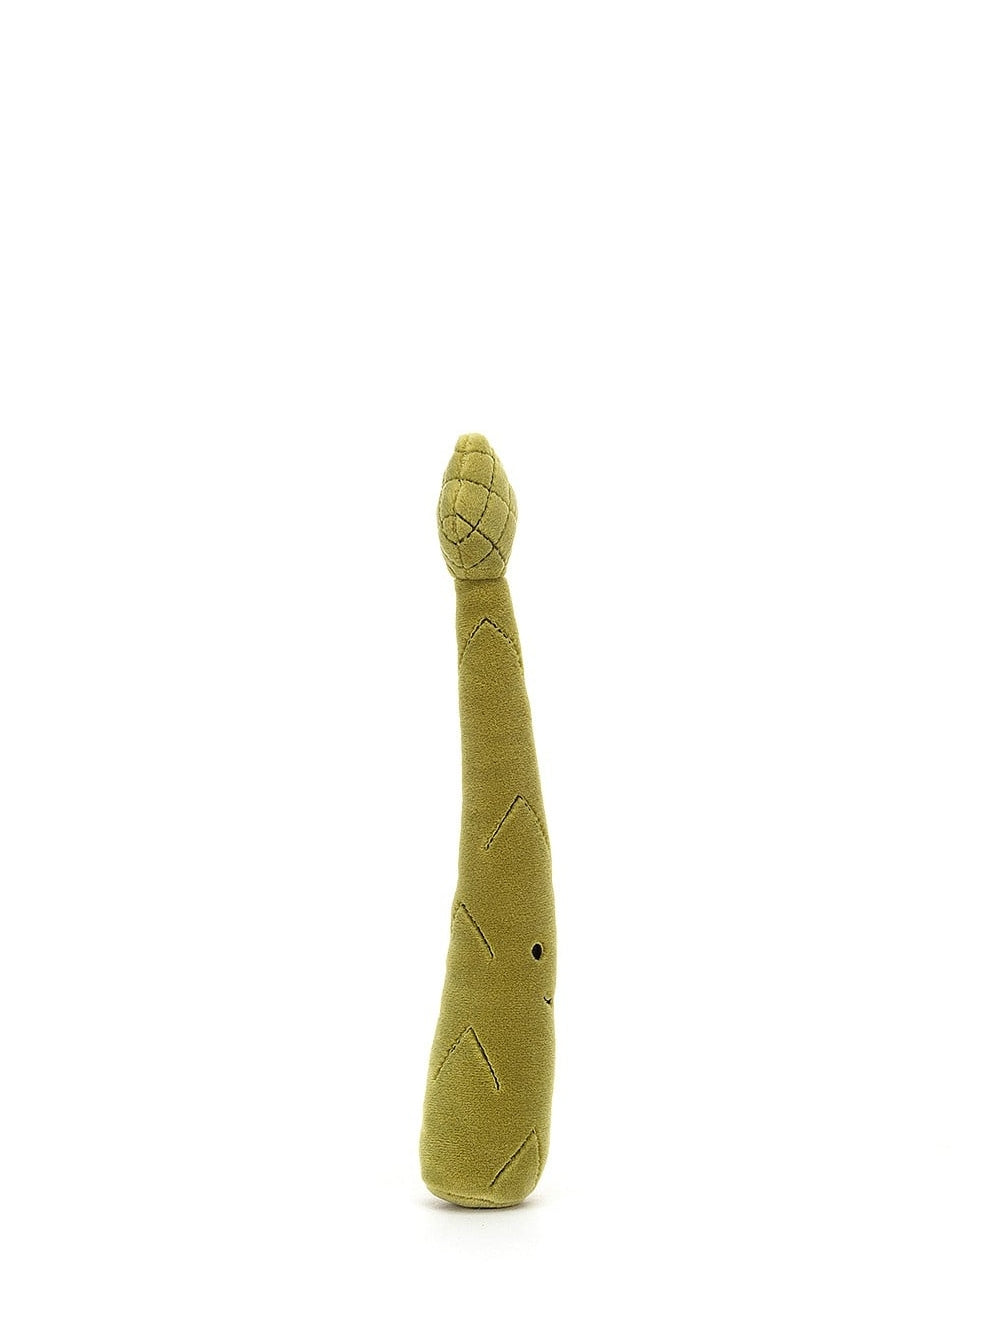 Vivacious Vegetable Asparagus